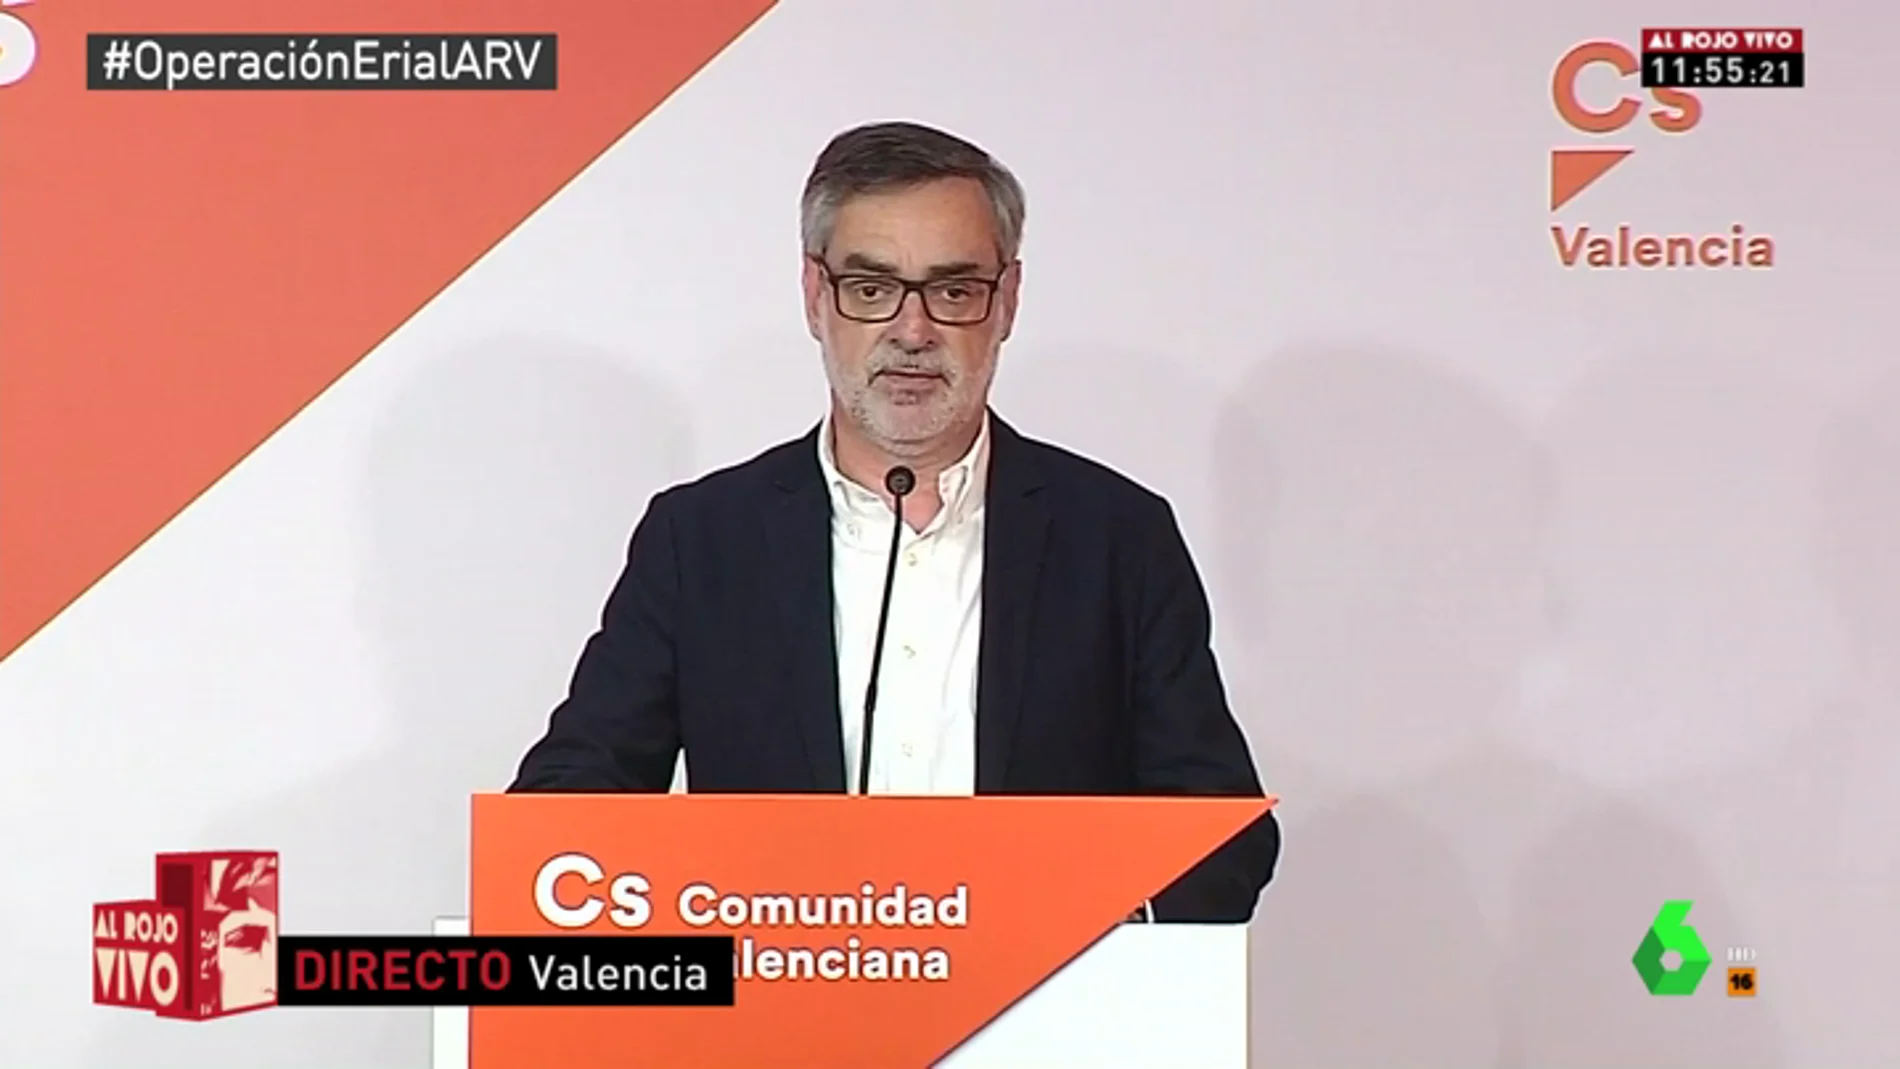 Ciudadanos exige a Rajoy que convoque nuevas elecciones: "Si se niega, estaremos dispuestos a apoyar la moción de censura"